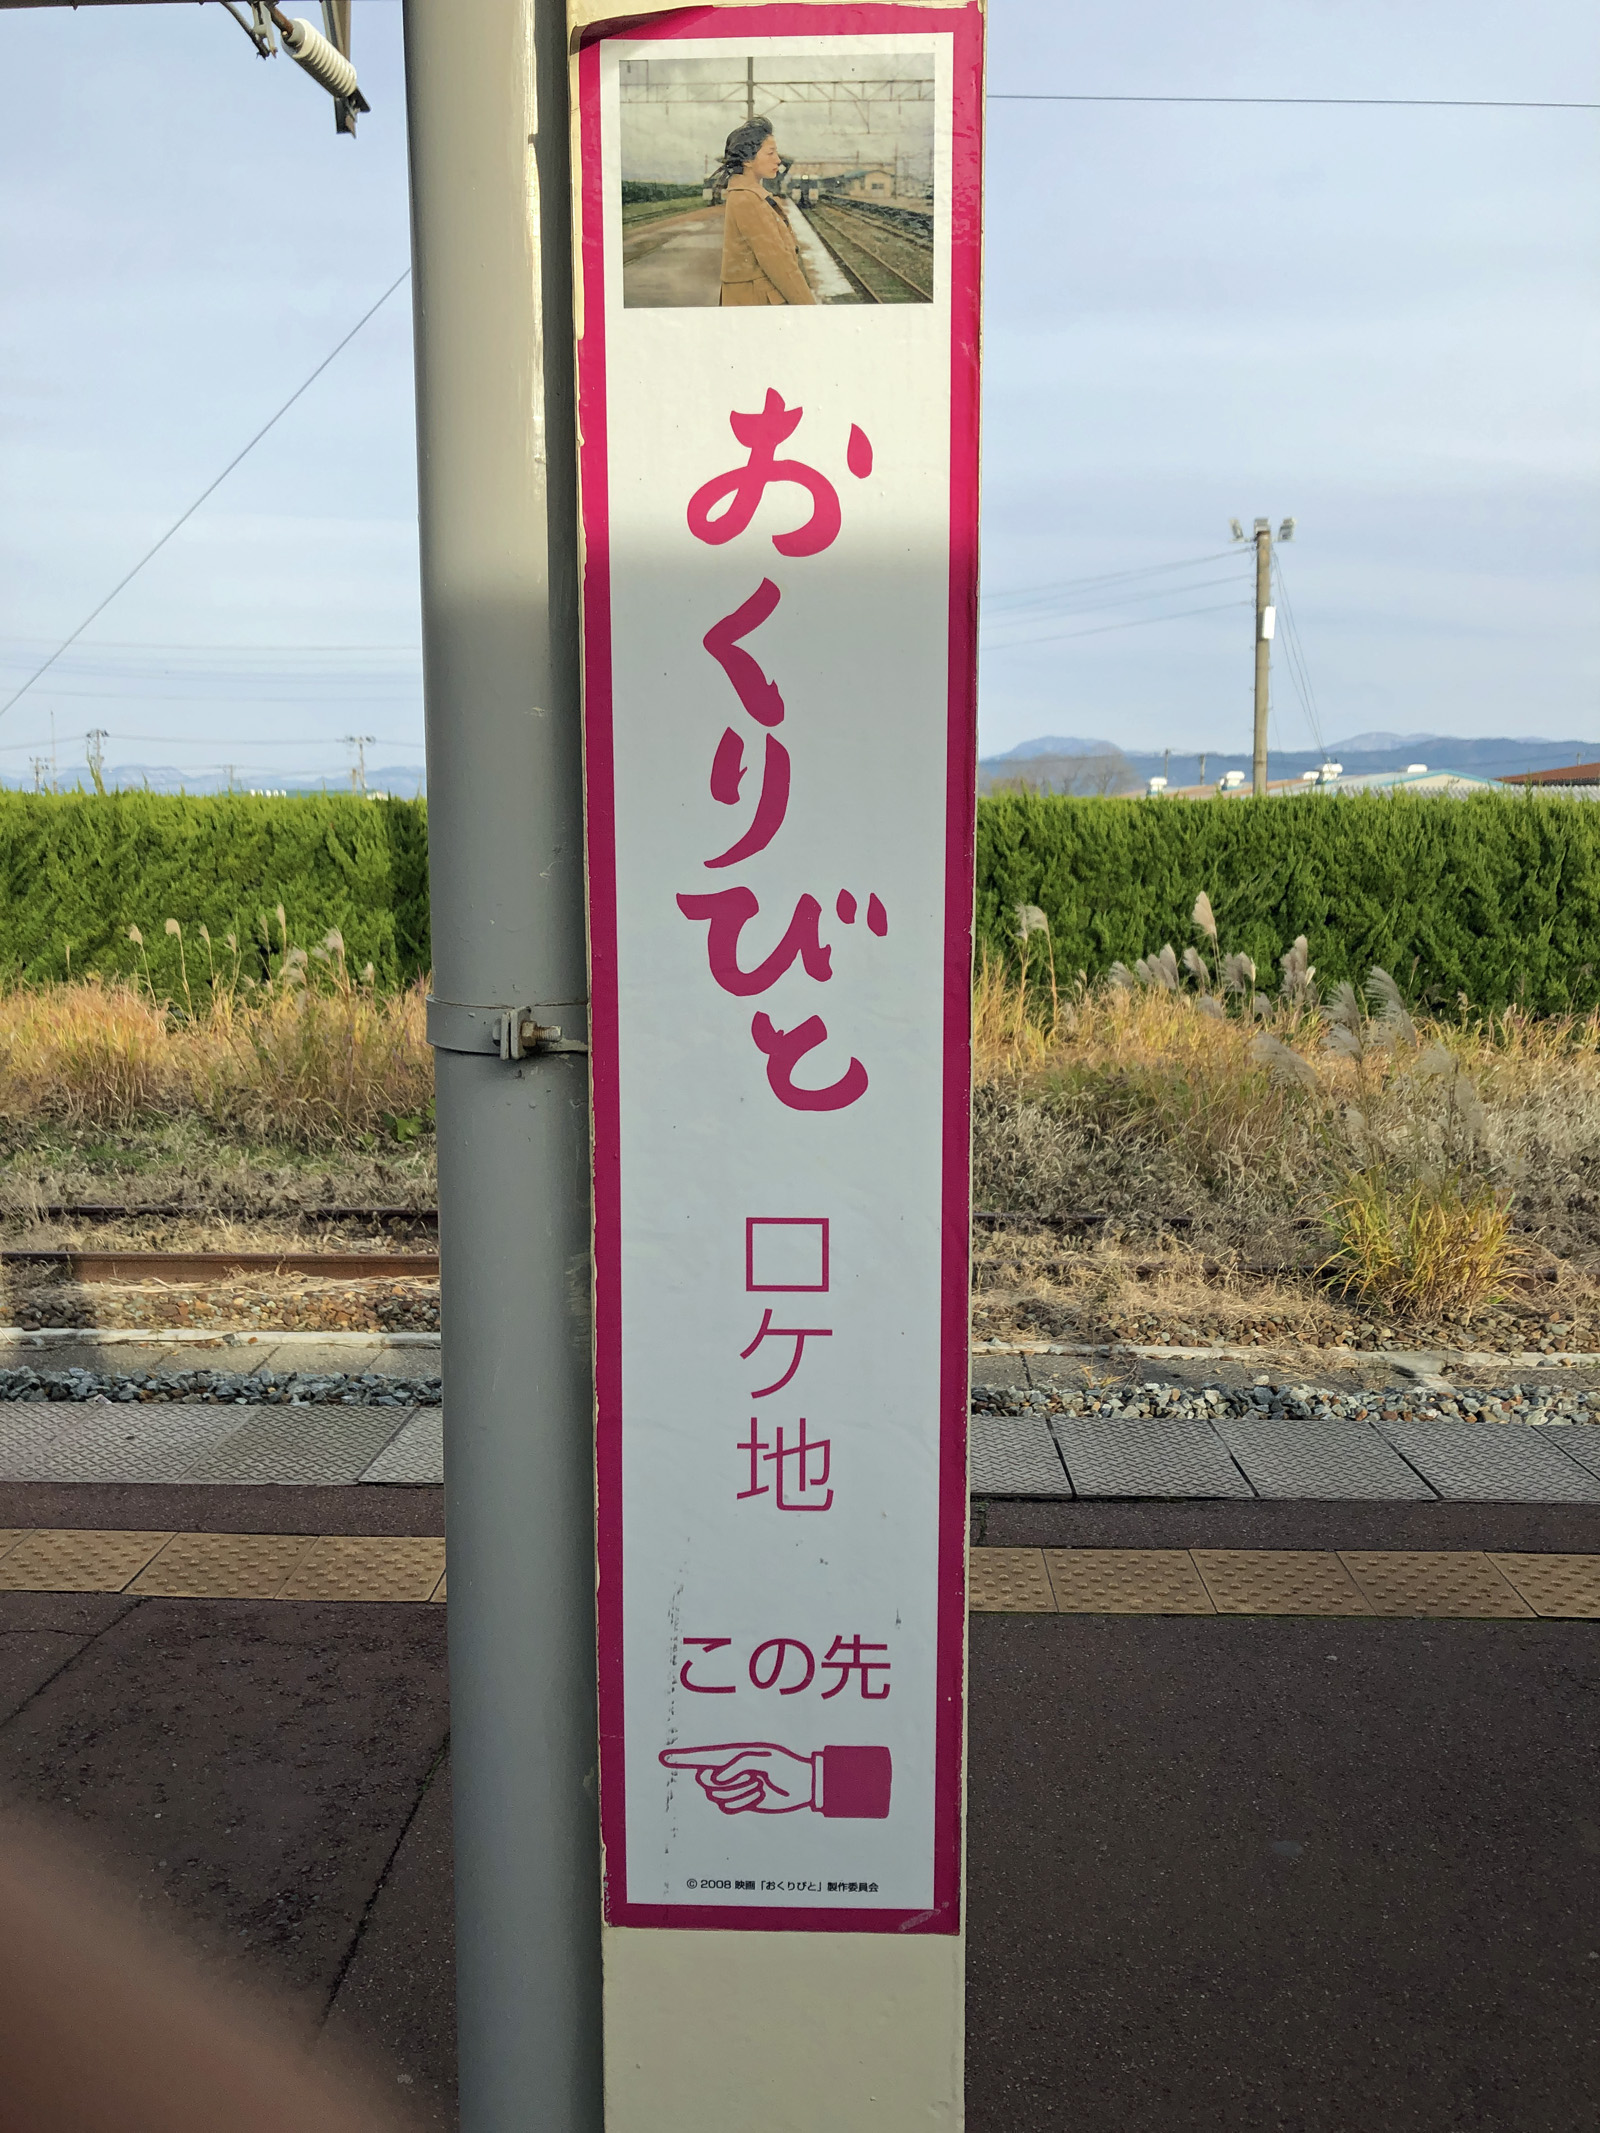 Nicht nur in Sakata, sondern auch im Bahnhof von Tsuruoka wurde der Film "Departures" gedreht.